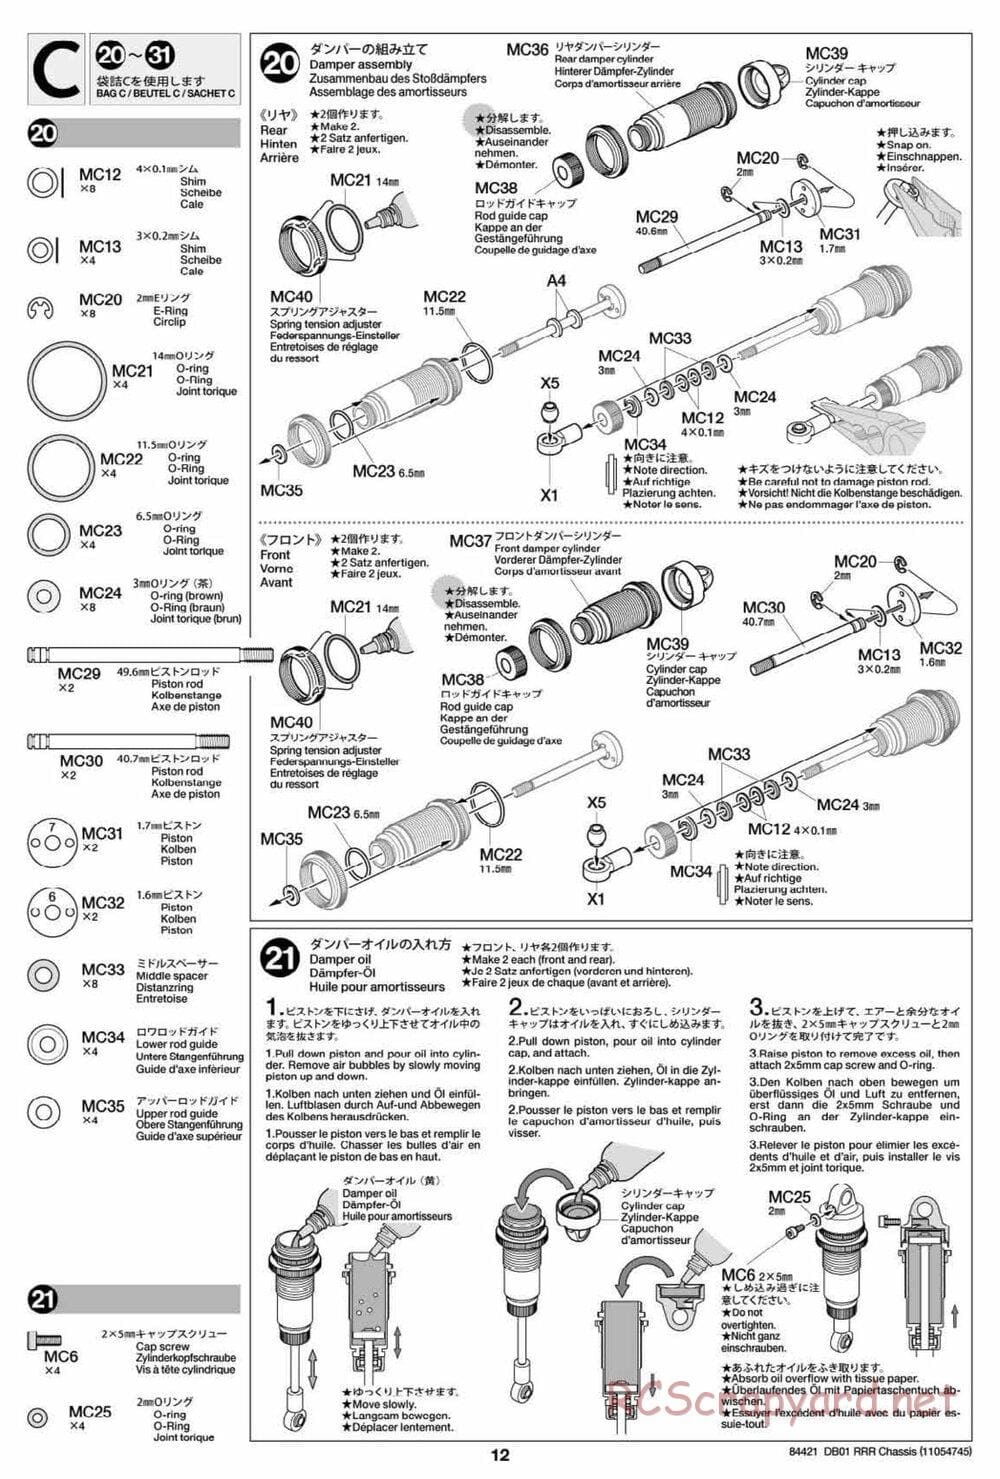 Tamiya - DB-01 RRR Chassis - Manual - Page 12